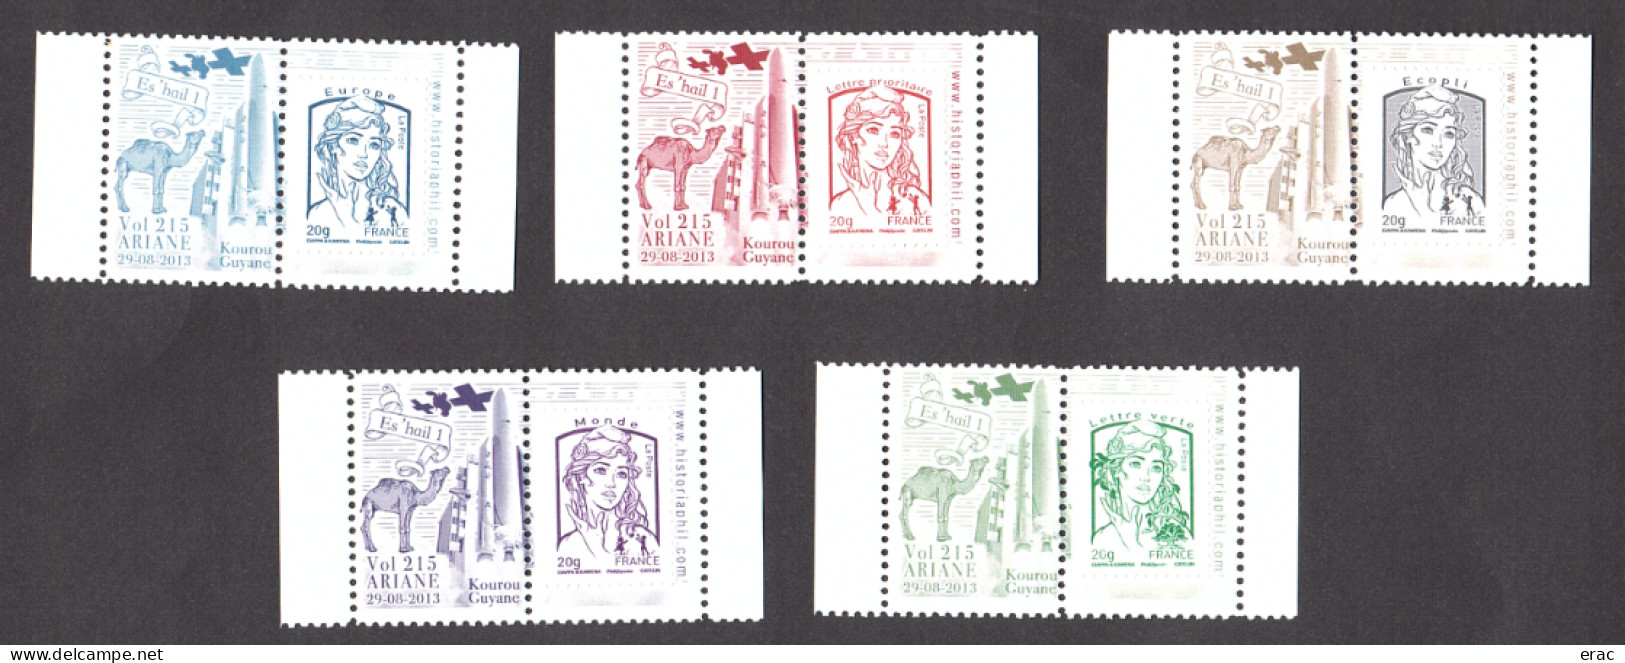 5 Porte-timbres Gommés - 2013 Ariane Vol 215 - Es'hail 1 - Avec TVP Marianne De Ciappa & Kawena Neufs - 2013-2018 Marianne Of Ciappa-Kawena